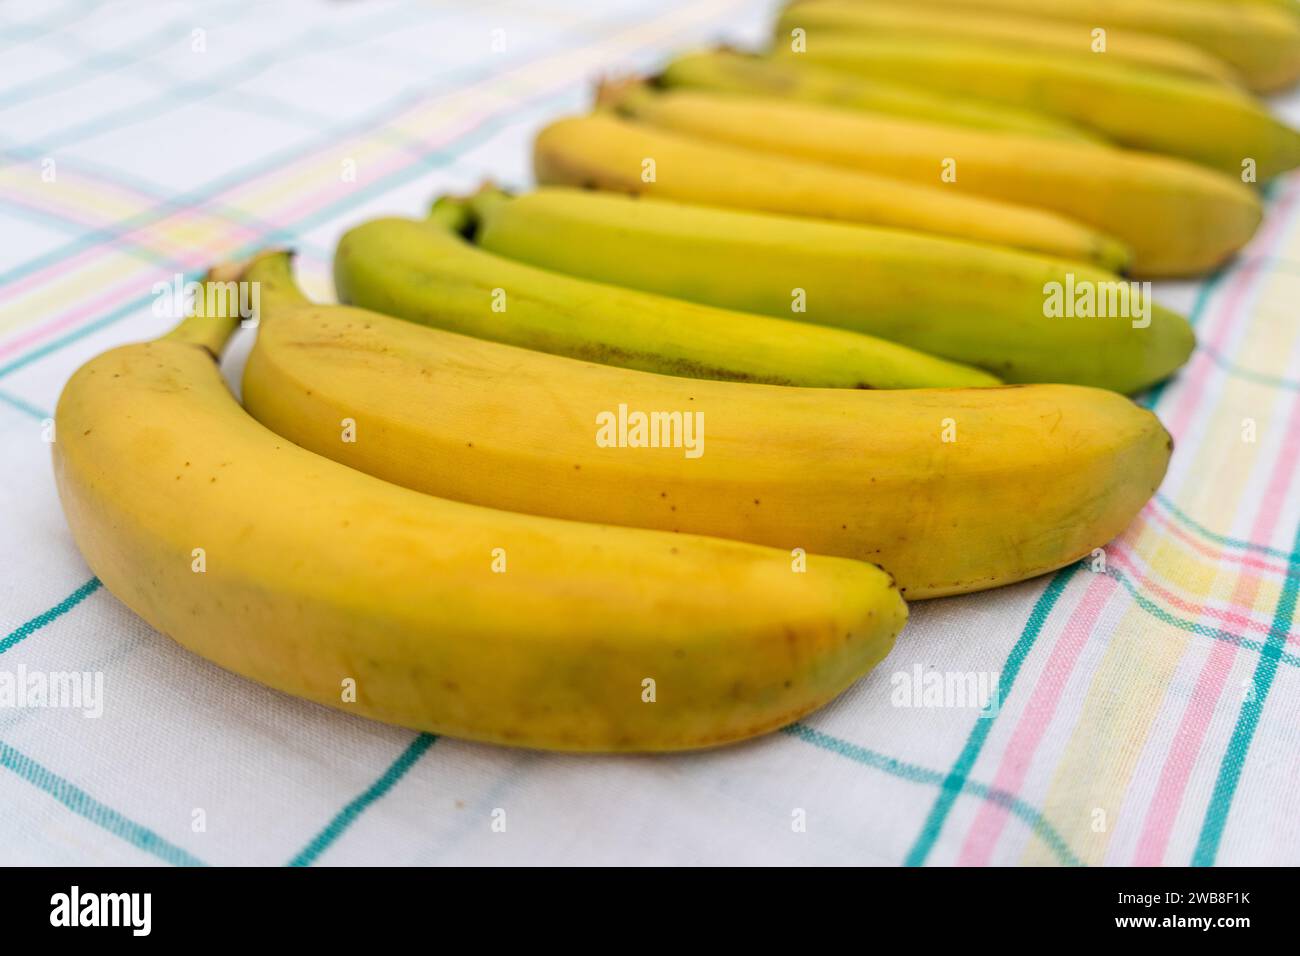 Mûr, appétissant, sain, gros, bananes sucrées, soigneusement doublé dans une rangée sur une table de nappe à carreaux sur un fond clair. La vue depuis le haut. H Banque D'Images